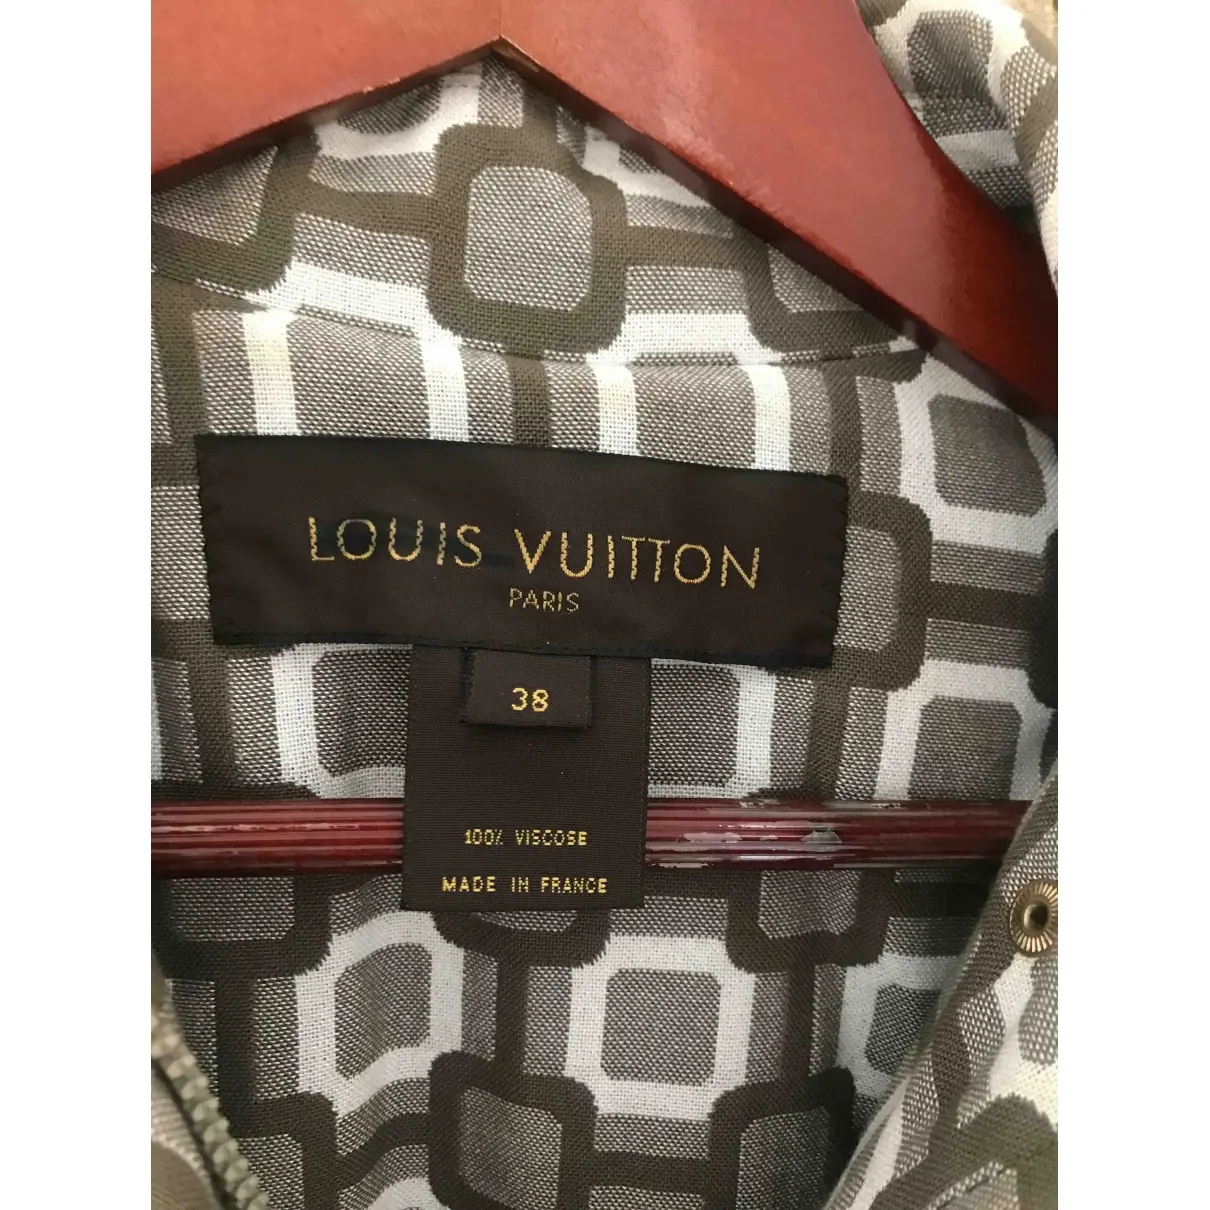 Buy Louis Vuitton Coat online